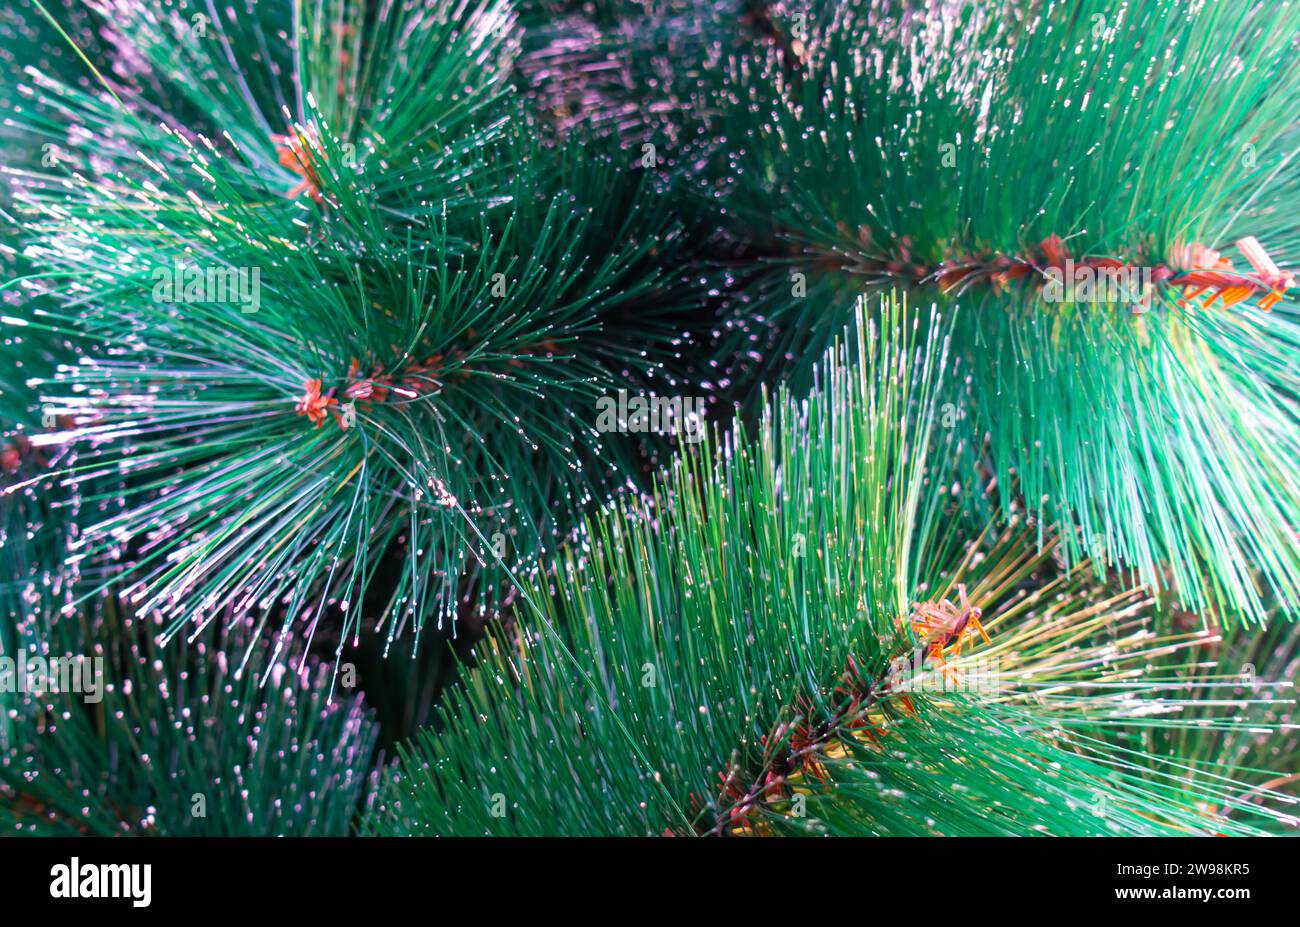 Artificial Christmas pine tree decor close-up. fur needle, fur needles, pine needle, pine needles, green needles tree, artificial frost needles Stock Photo